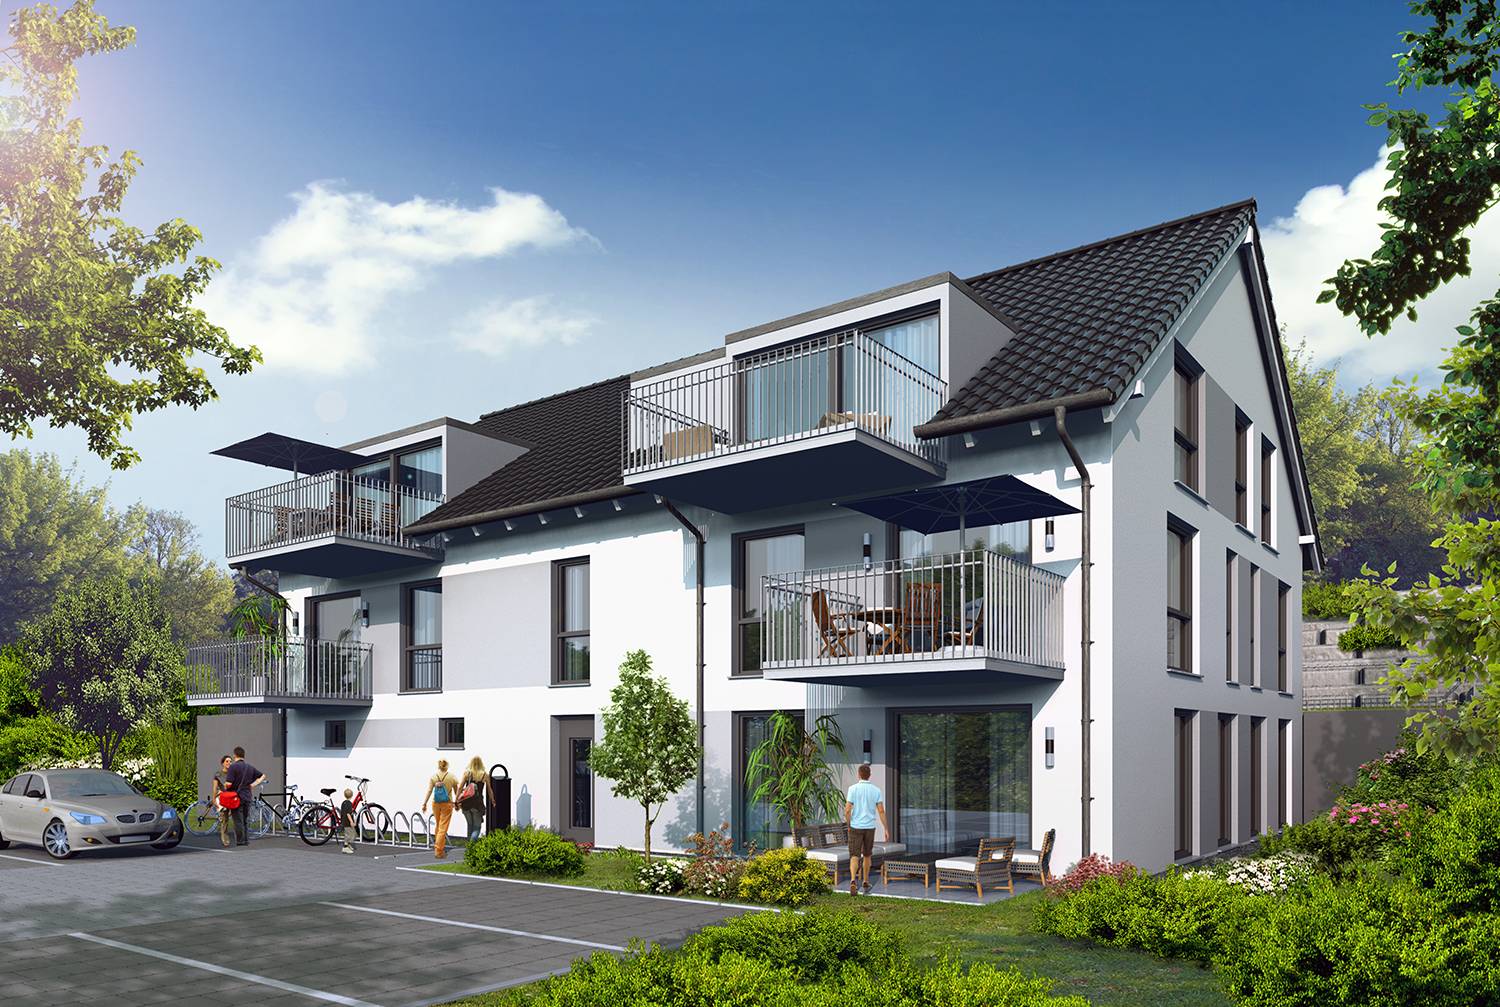 Architektur-Visualisierung eines Bauvorhabens erstellt für die Firma Arora UG / Frankfurt a. Main im Jahre 2022. Hier ist der Blick auf die Hof-/Eingangsperspektive des geplanten Mehrfamilienhauses mit 5 Wohn-Parteien abgebildet.